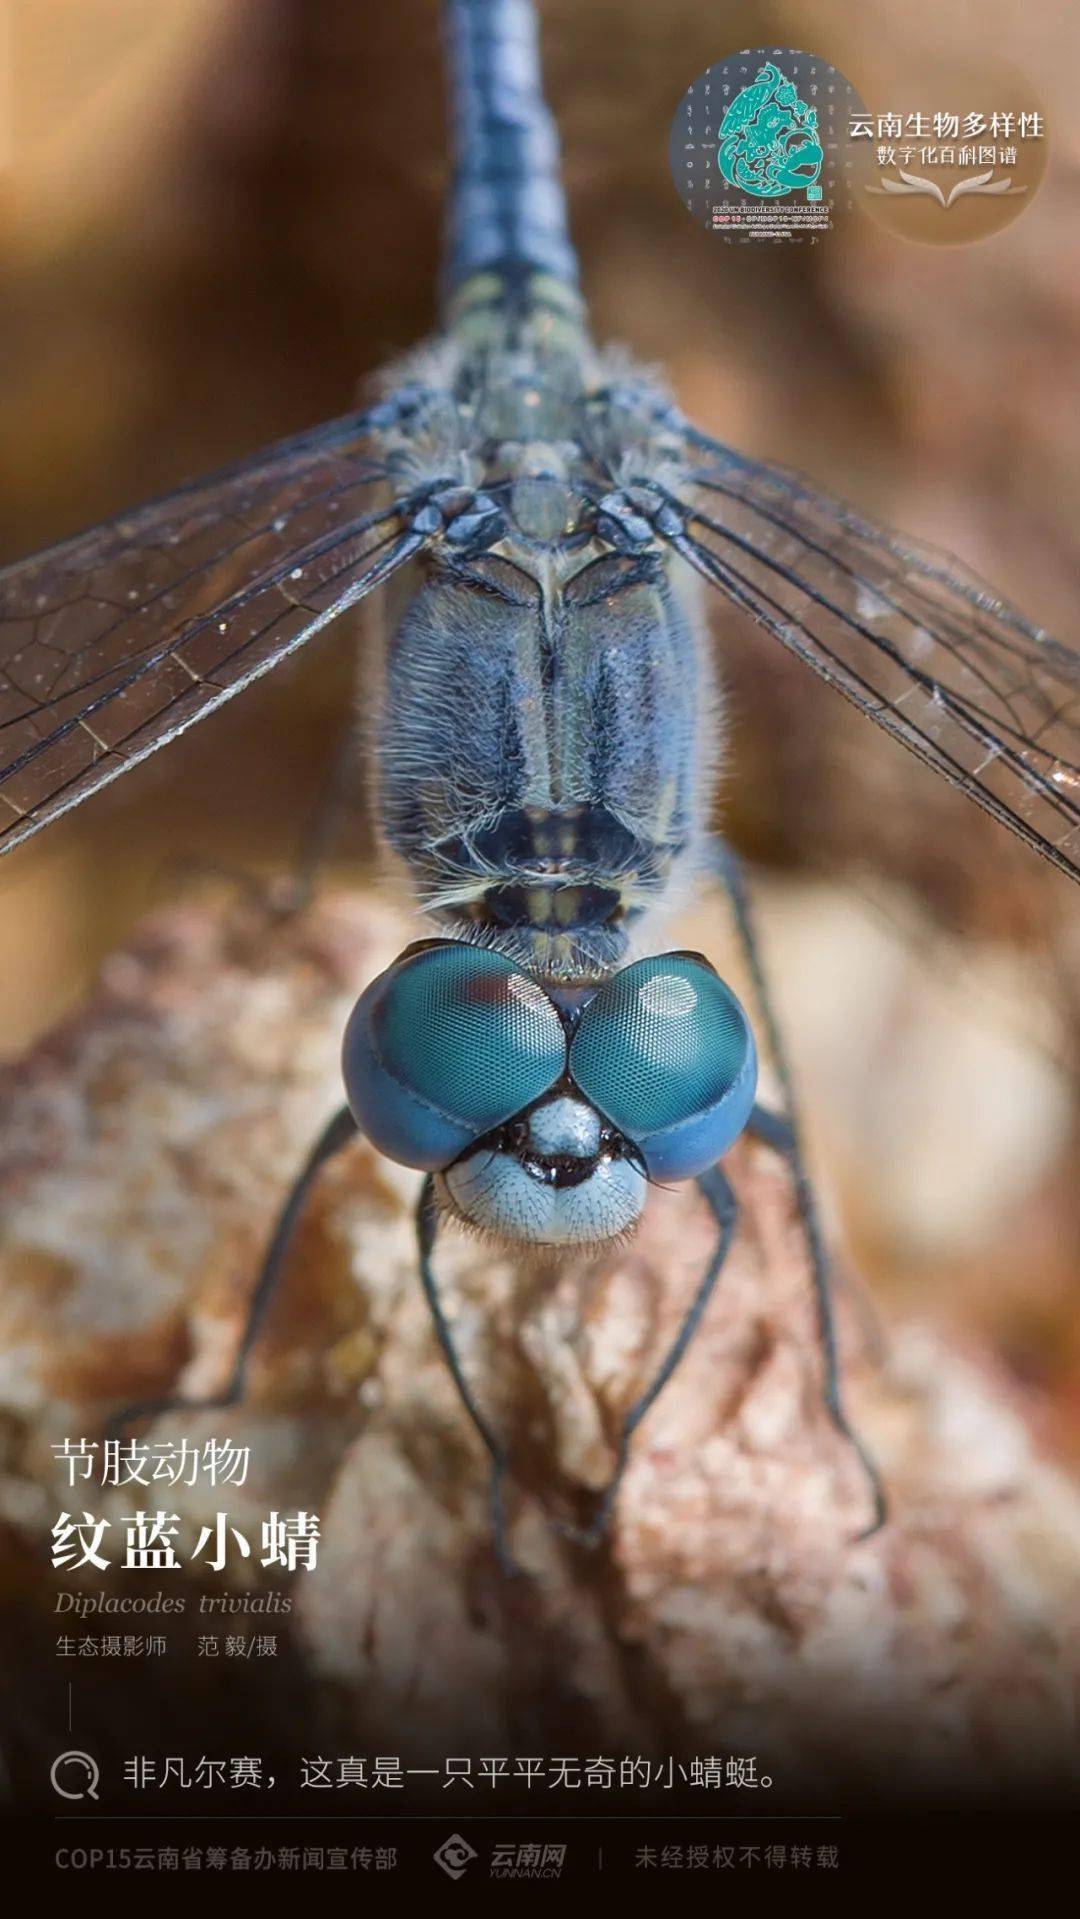 【云南生物多样性数字化百科图谱】节肢动物·纹蓝小蜻:非凡尔赛,这真